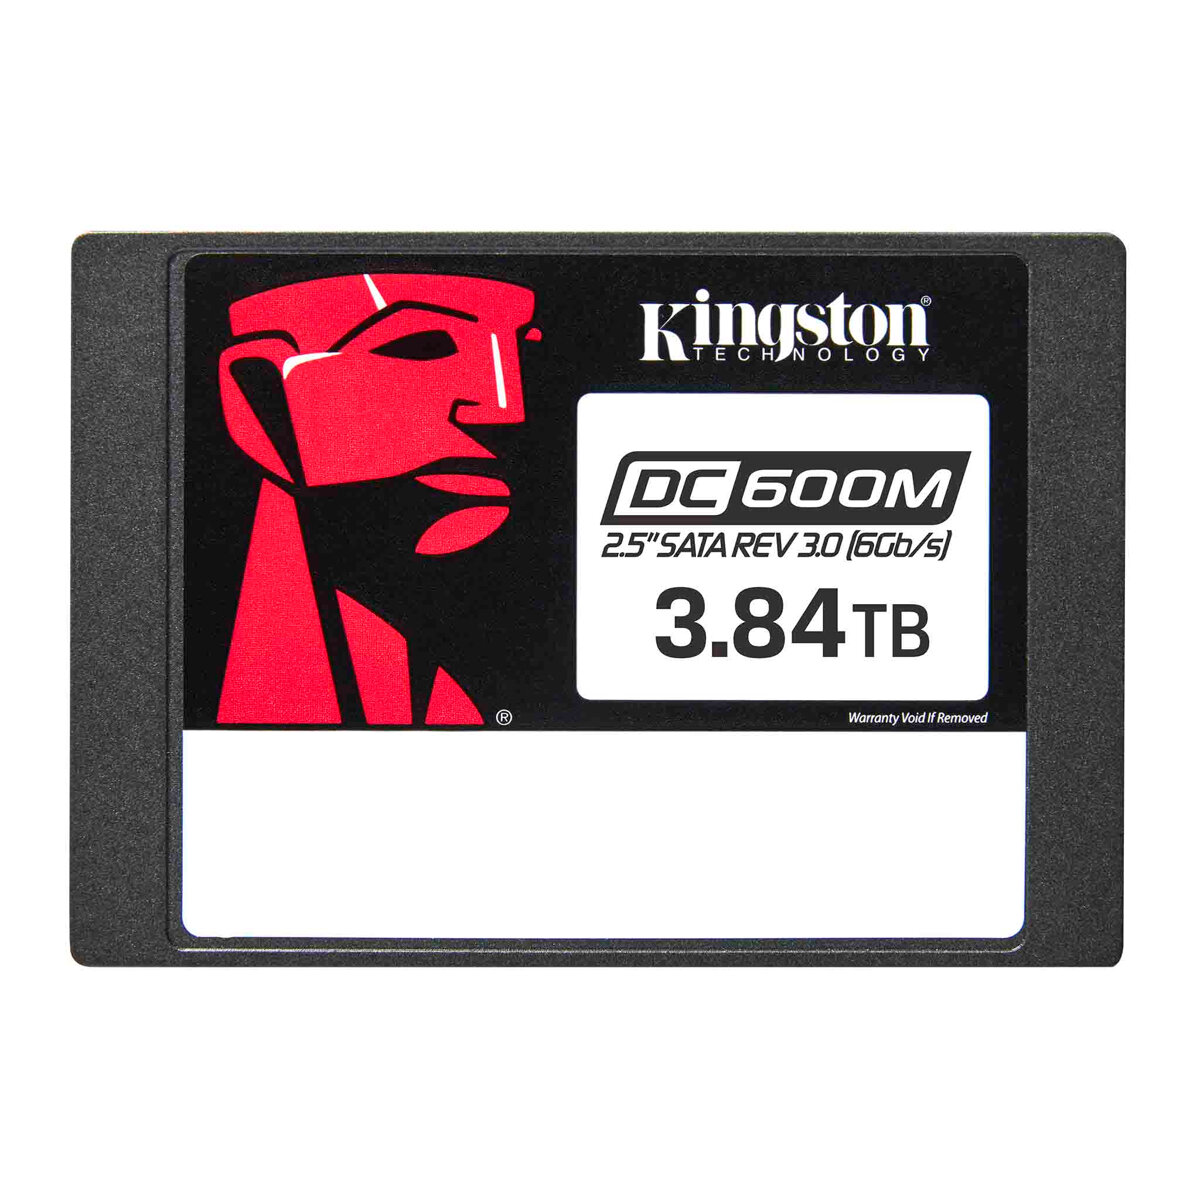 Dysk SSD Kingston DC600M 3.84 TB od frontu na białym tle